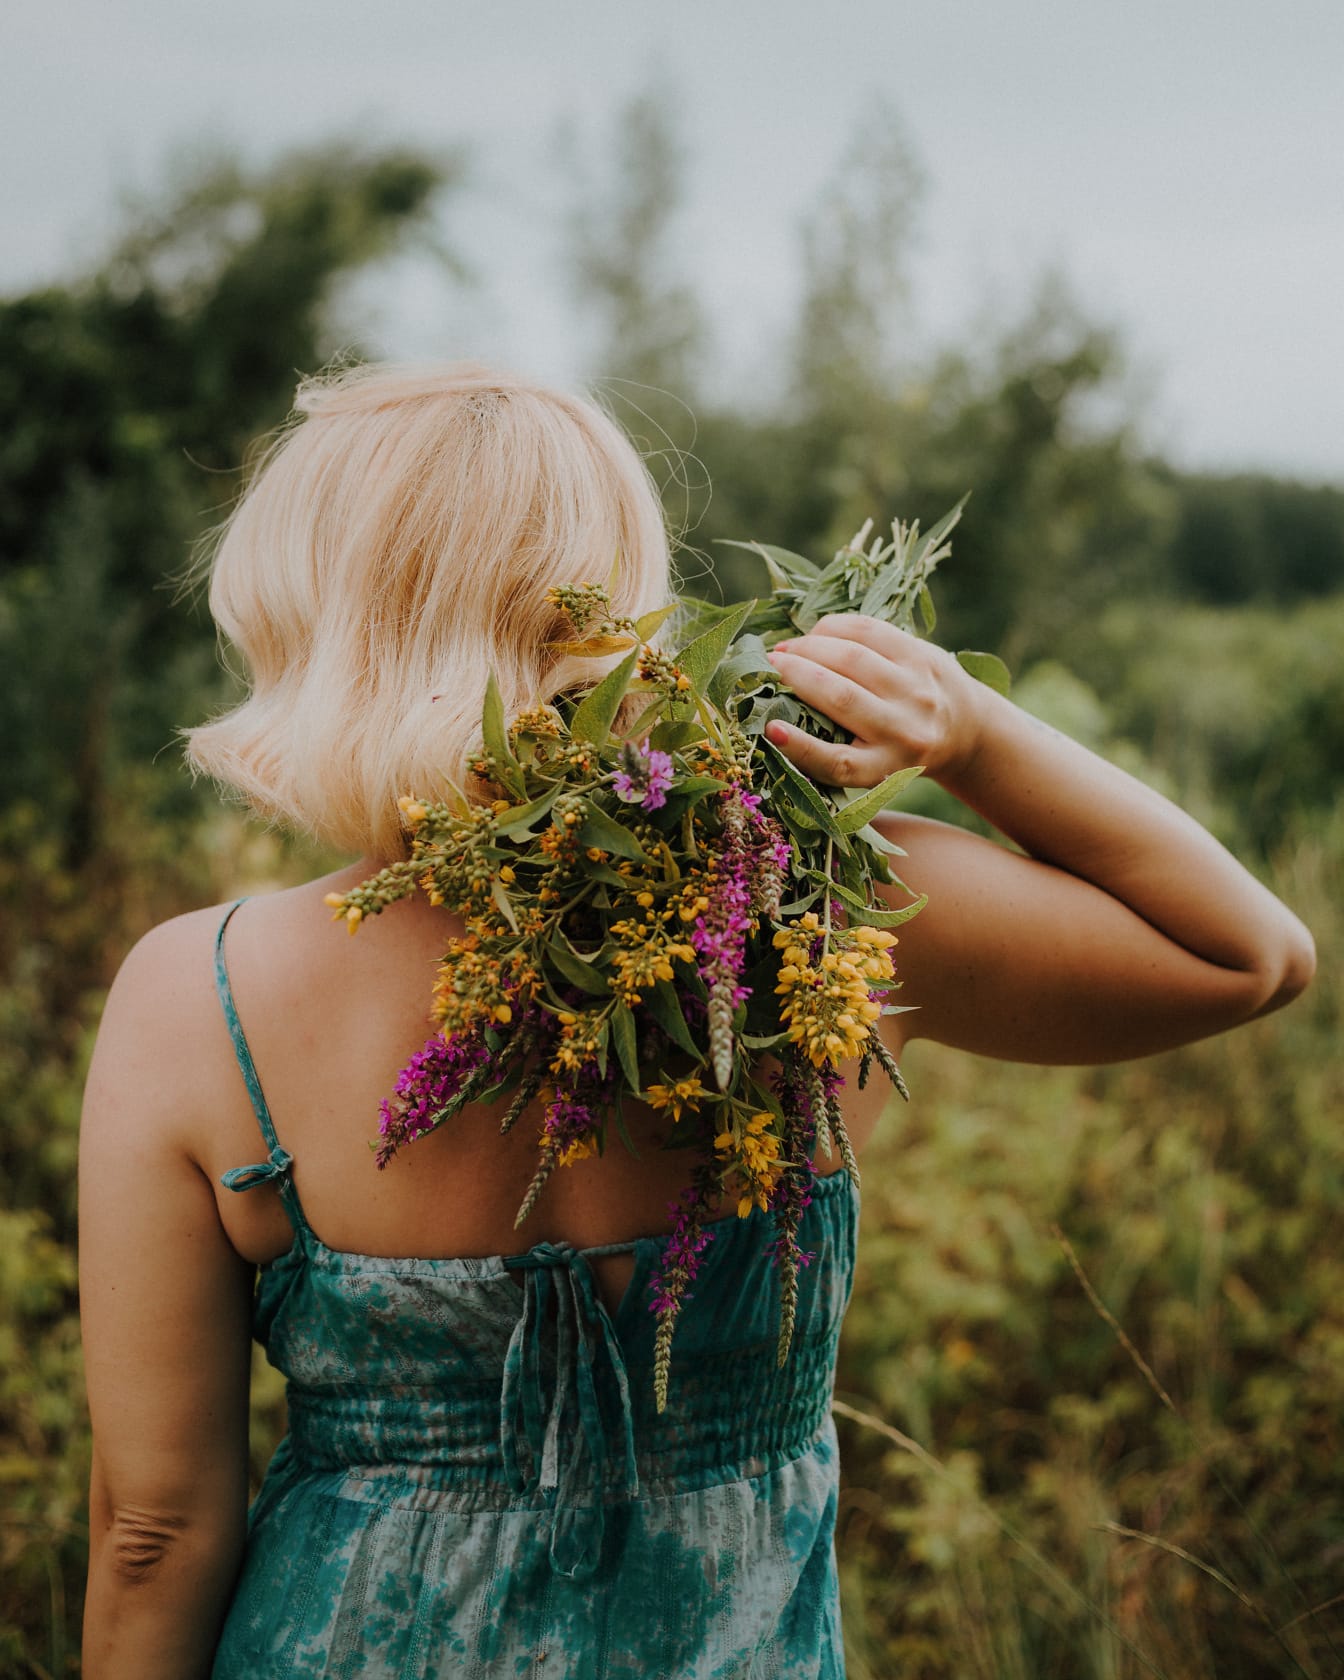 Bevindende blonde jonge vrouw die een boeket bloemen op haar rug houdt